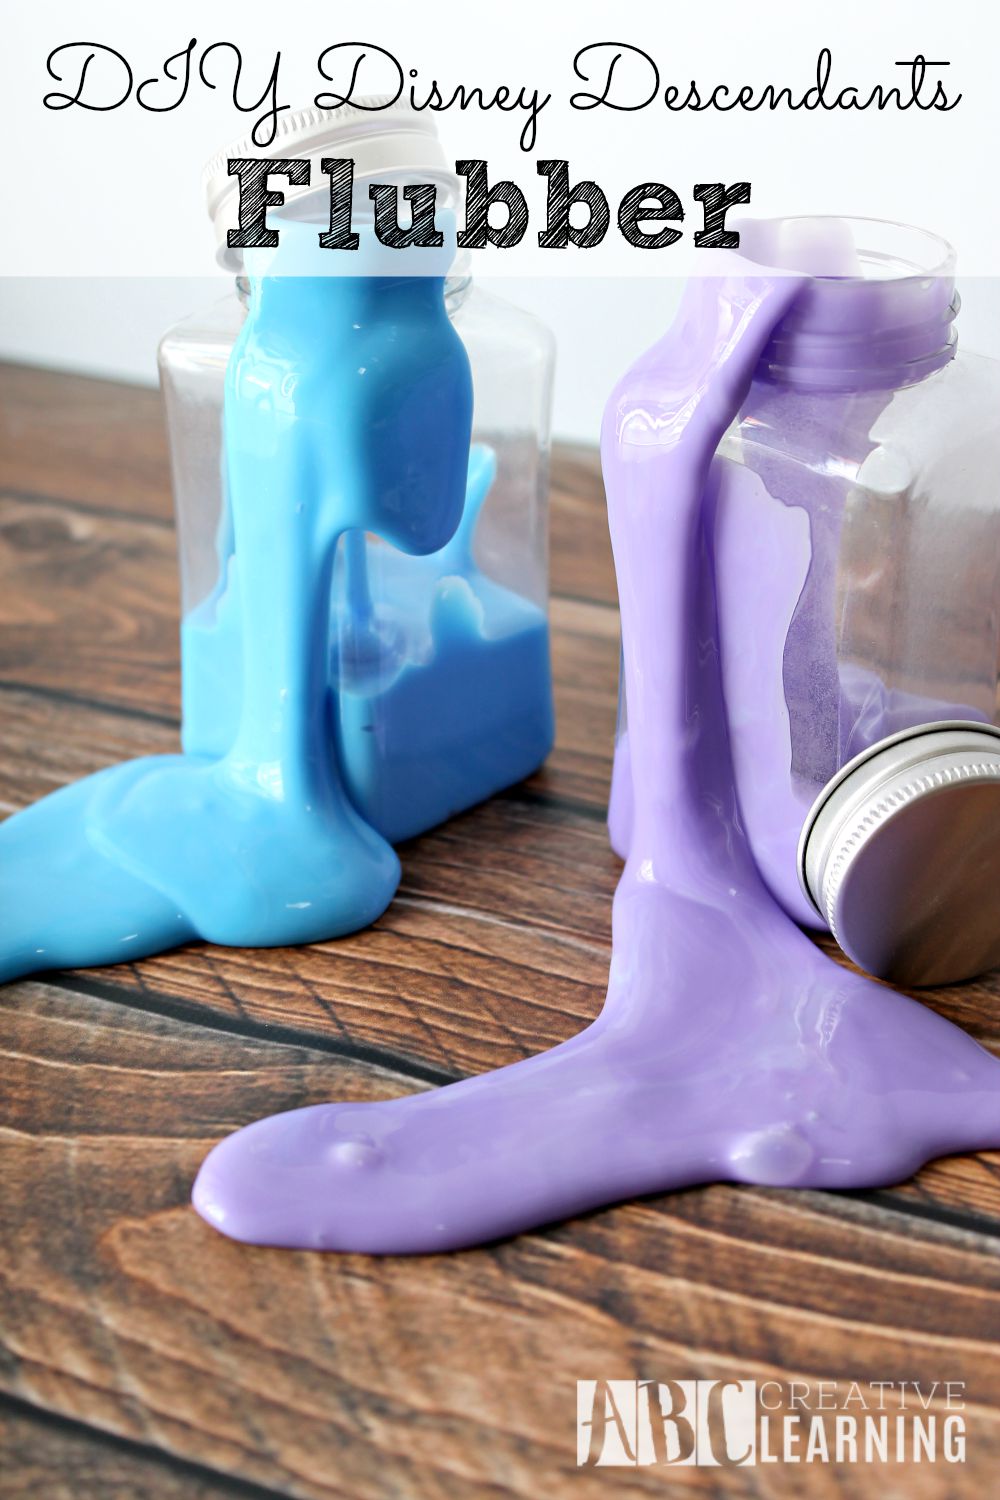 Potion Making With Disney Descendants Flubber DIY